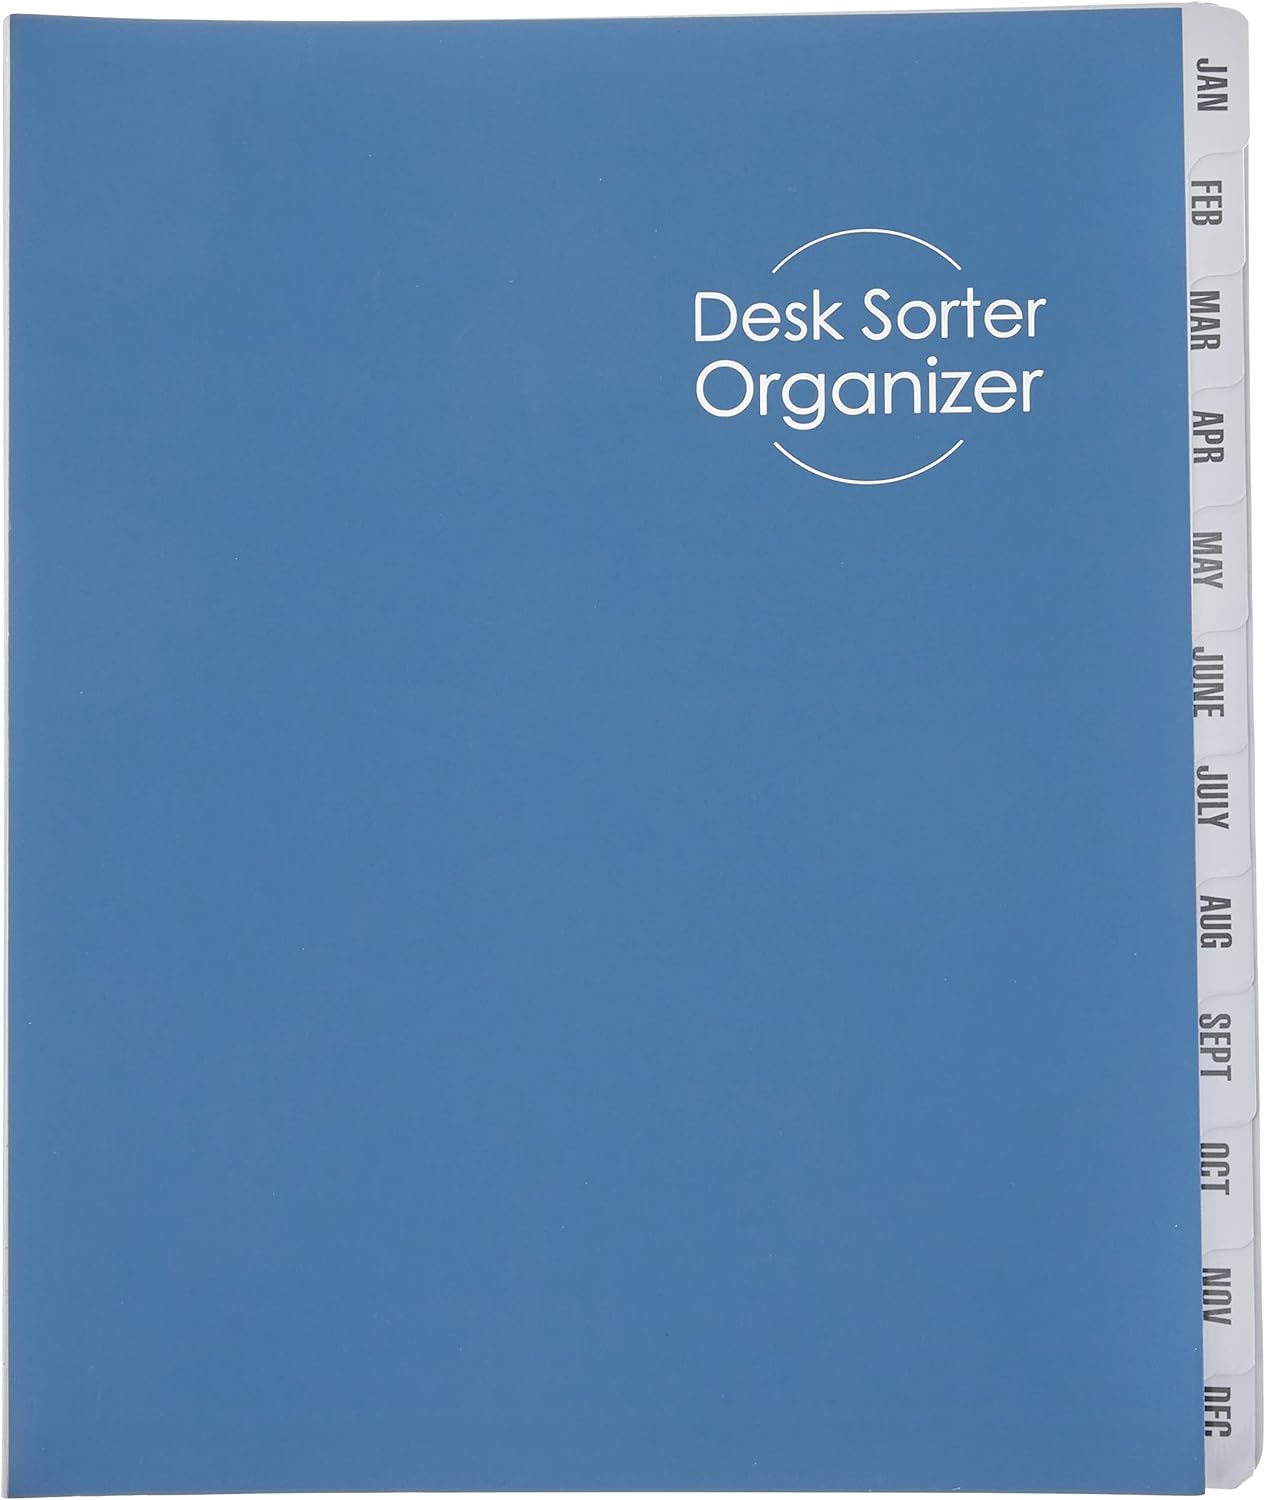 Smead Desk File/Sorter, Monthly (Jan-Dec), 12 Dividers, Letter Size, Dark Blue (89286)